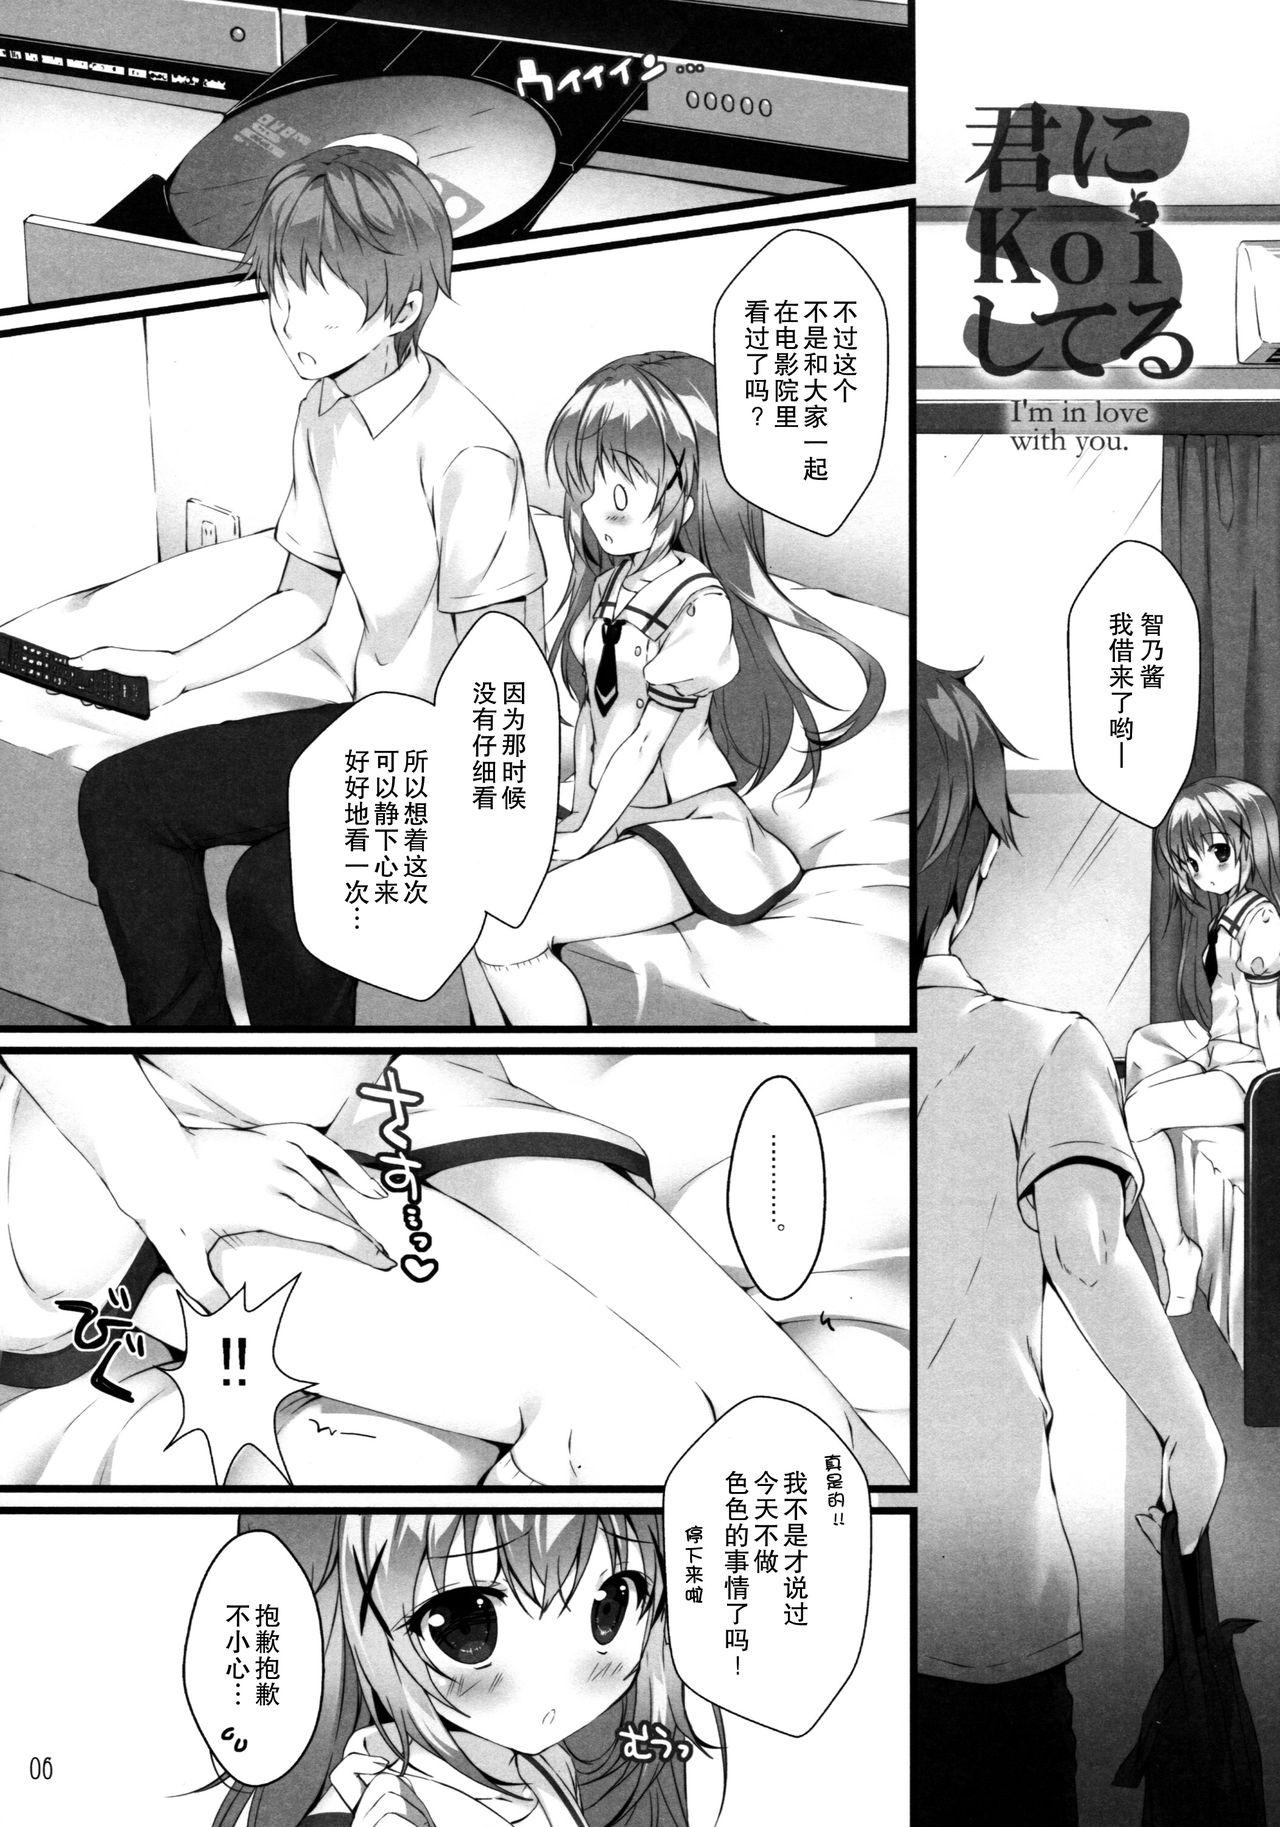 Hot Girls Getting Fucked Kimi ni koi Shiteru 5 - Gochuumon wa usagi desu ka Jerkoff - Page 6